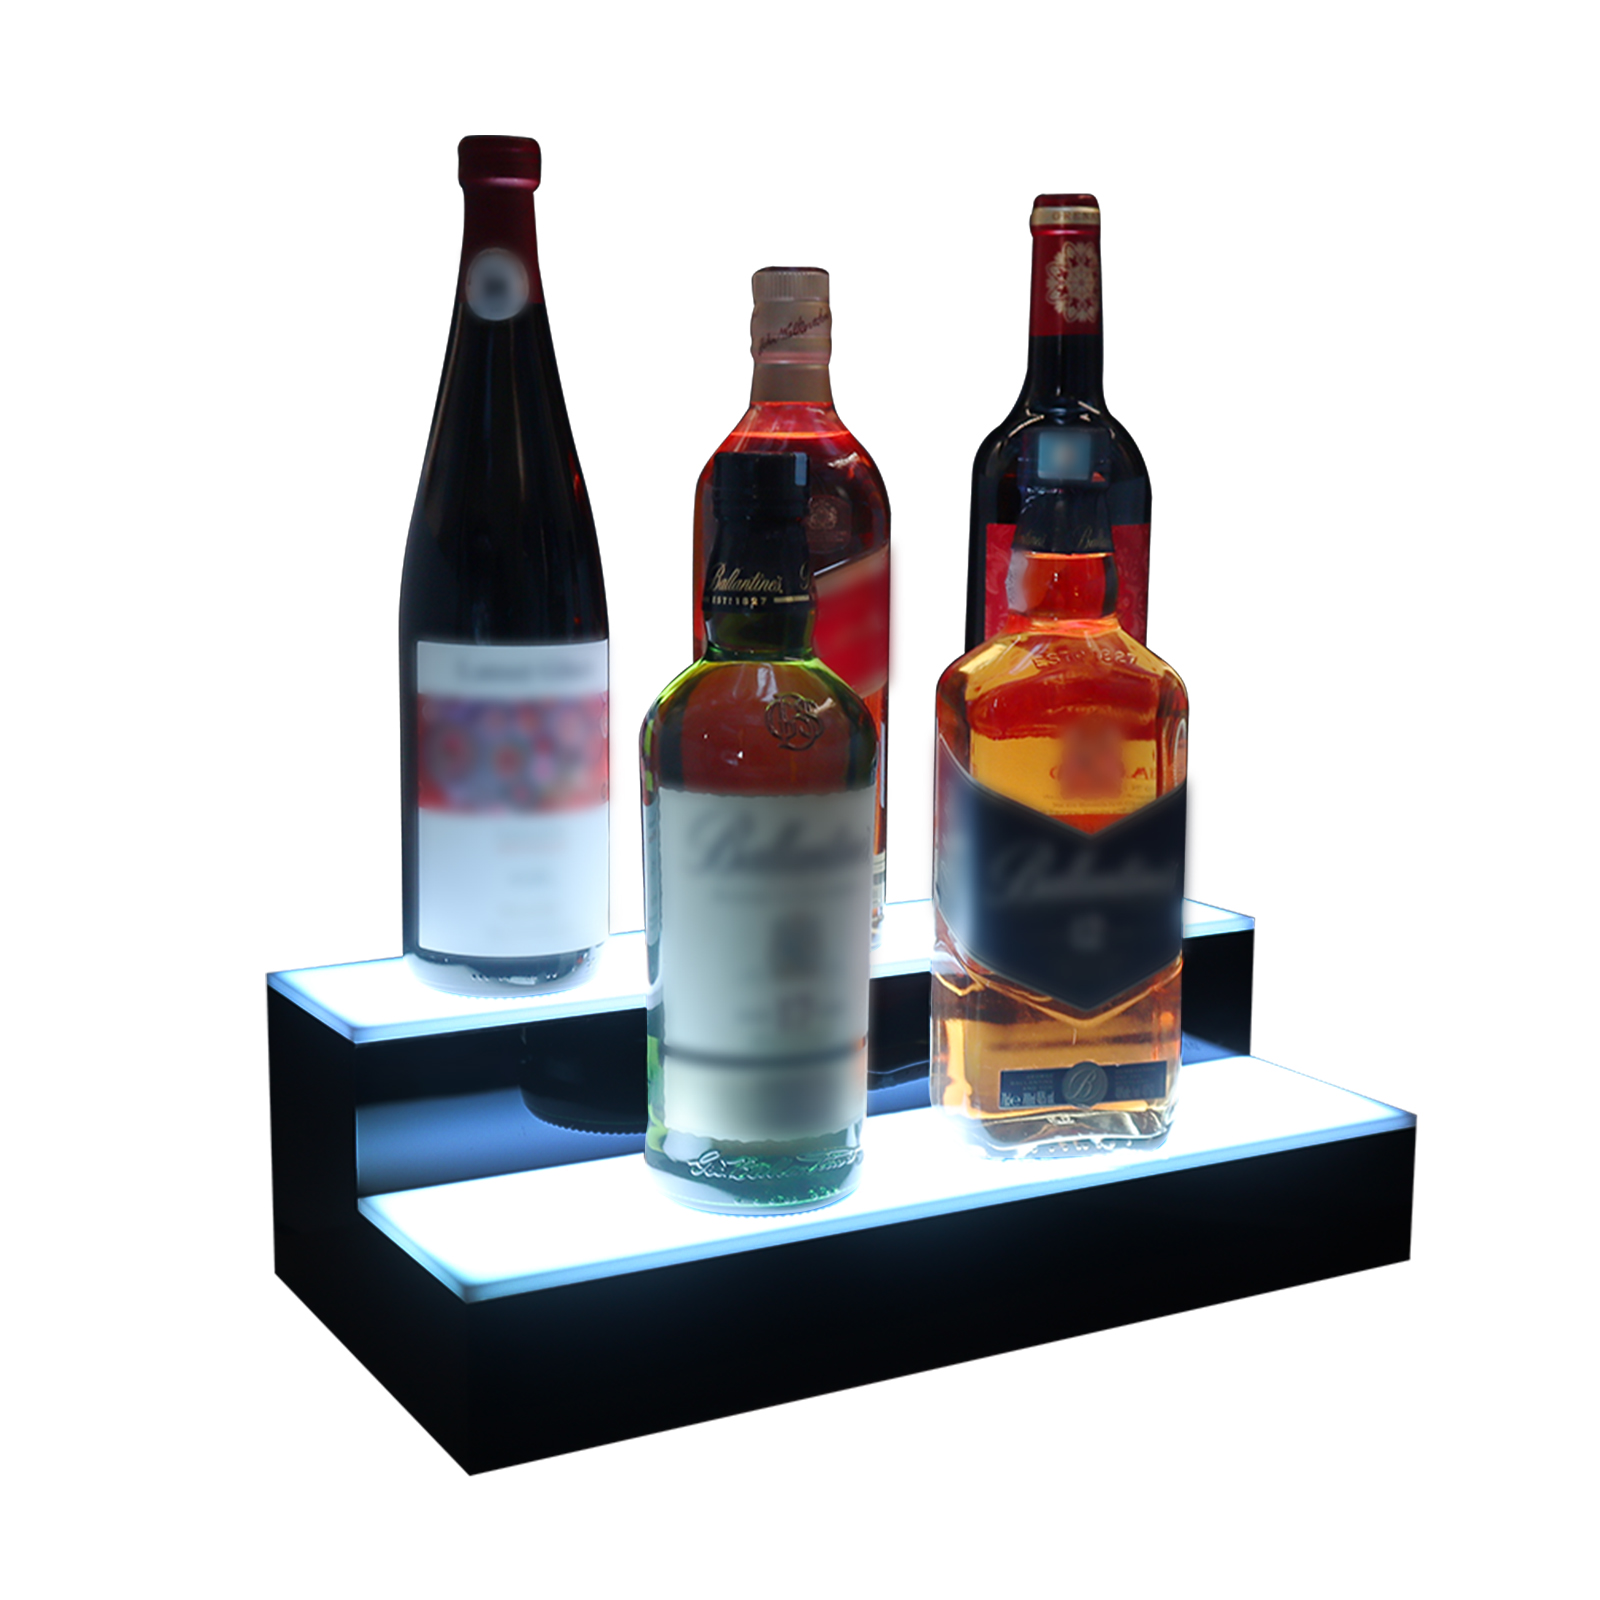 VONCI LED Lighted Liquor Bottle Display Shelf,16 Inch 2 Steps